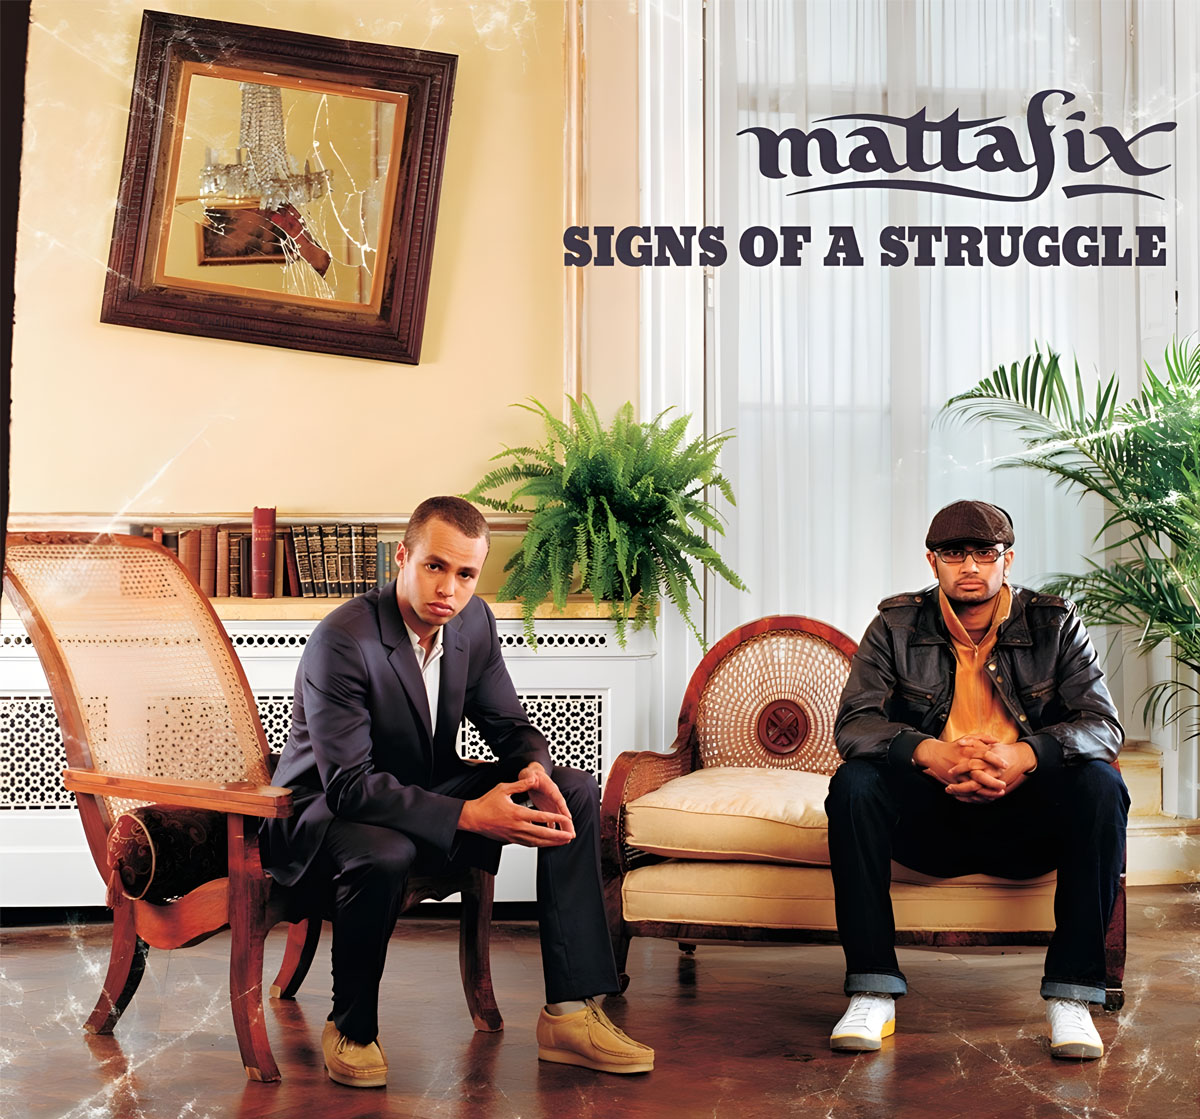 Обложка дебютного альбома группы Mattafix